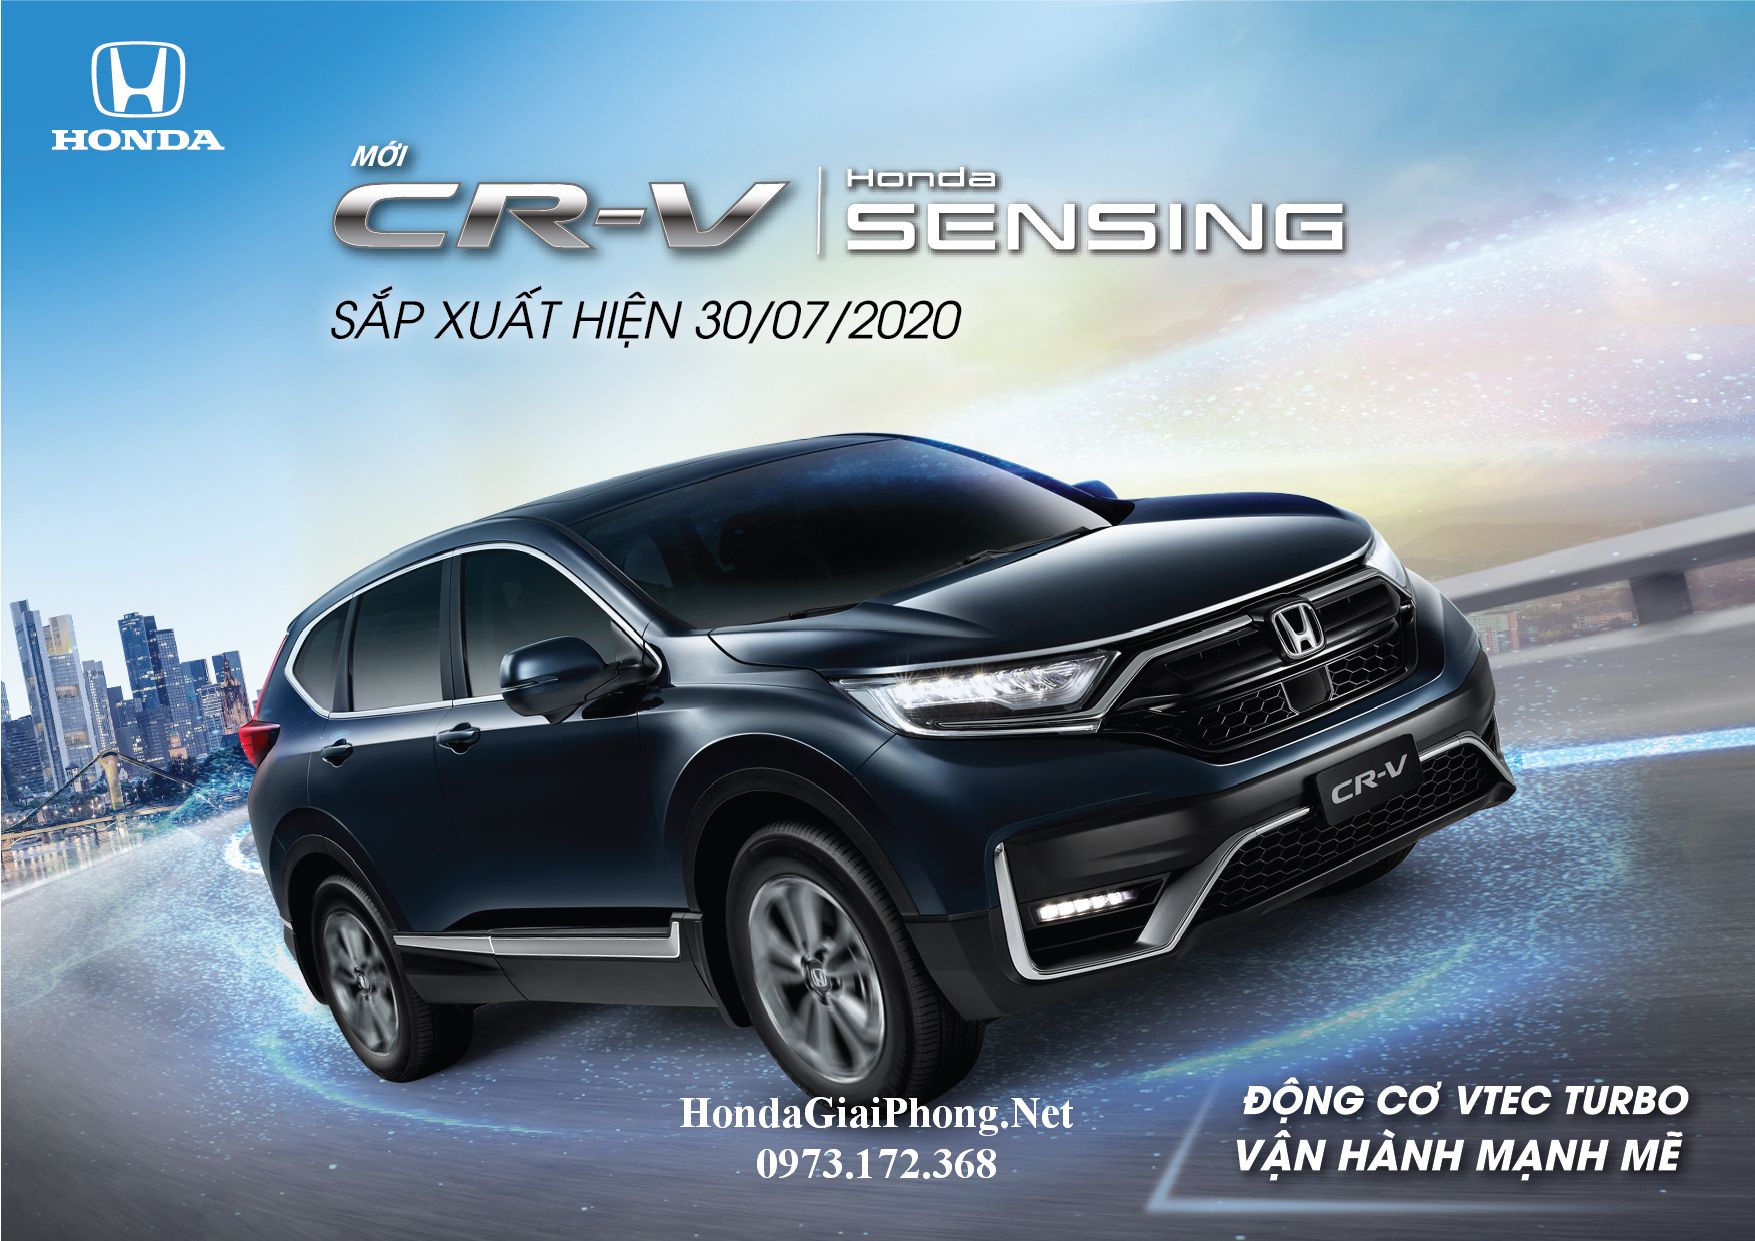 Chi tiết thông số và trang bị xe Honda CRV 2020 lắp ráp tại Việt Nam